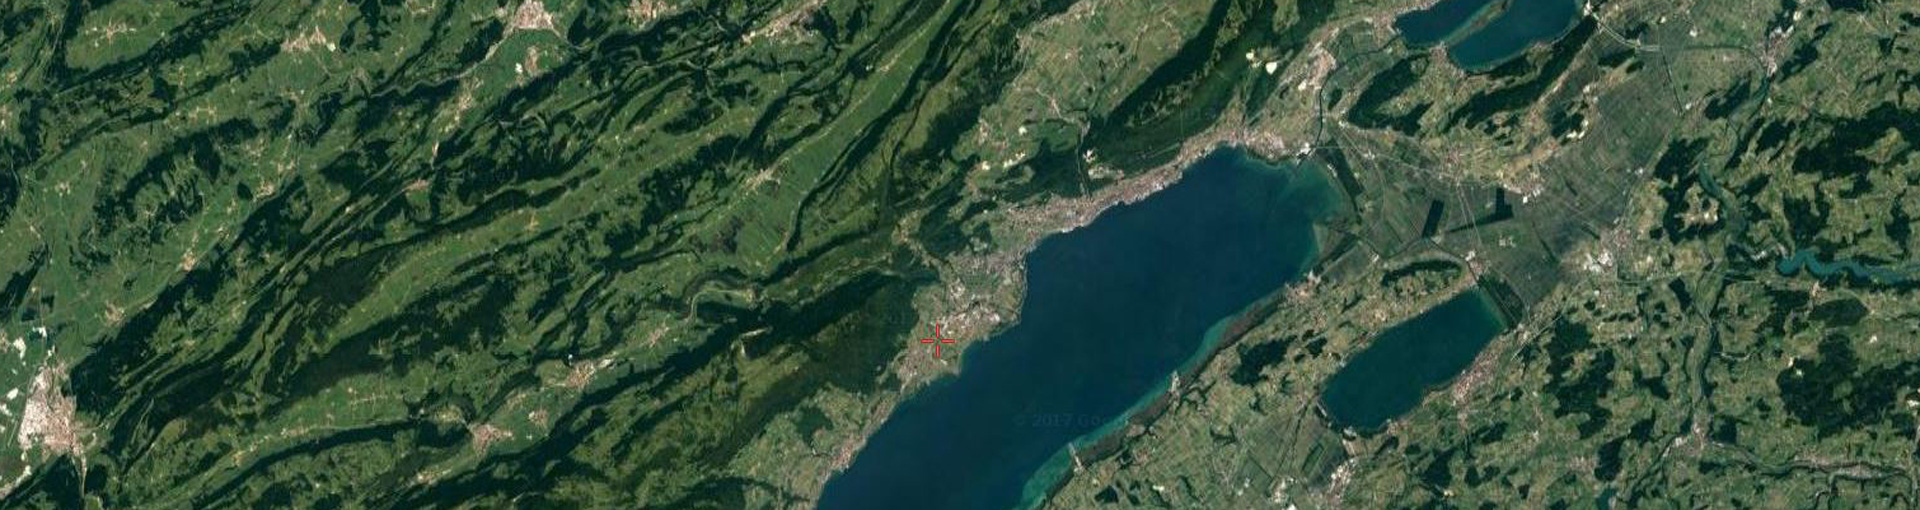 Une vue de Neuchâtel et de la région des trois lacs par satellite